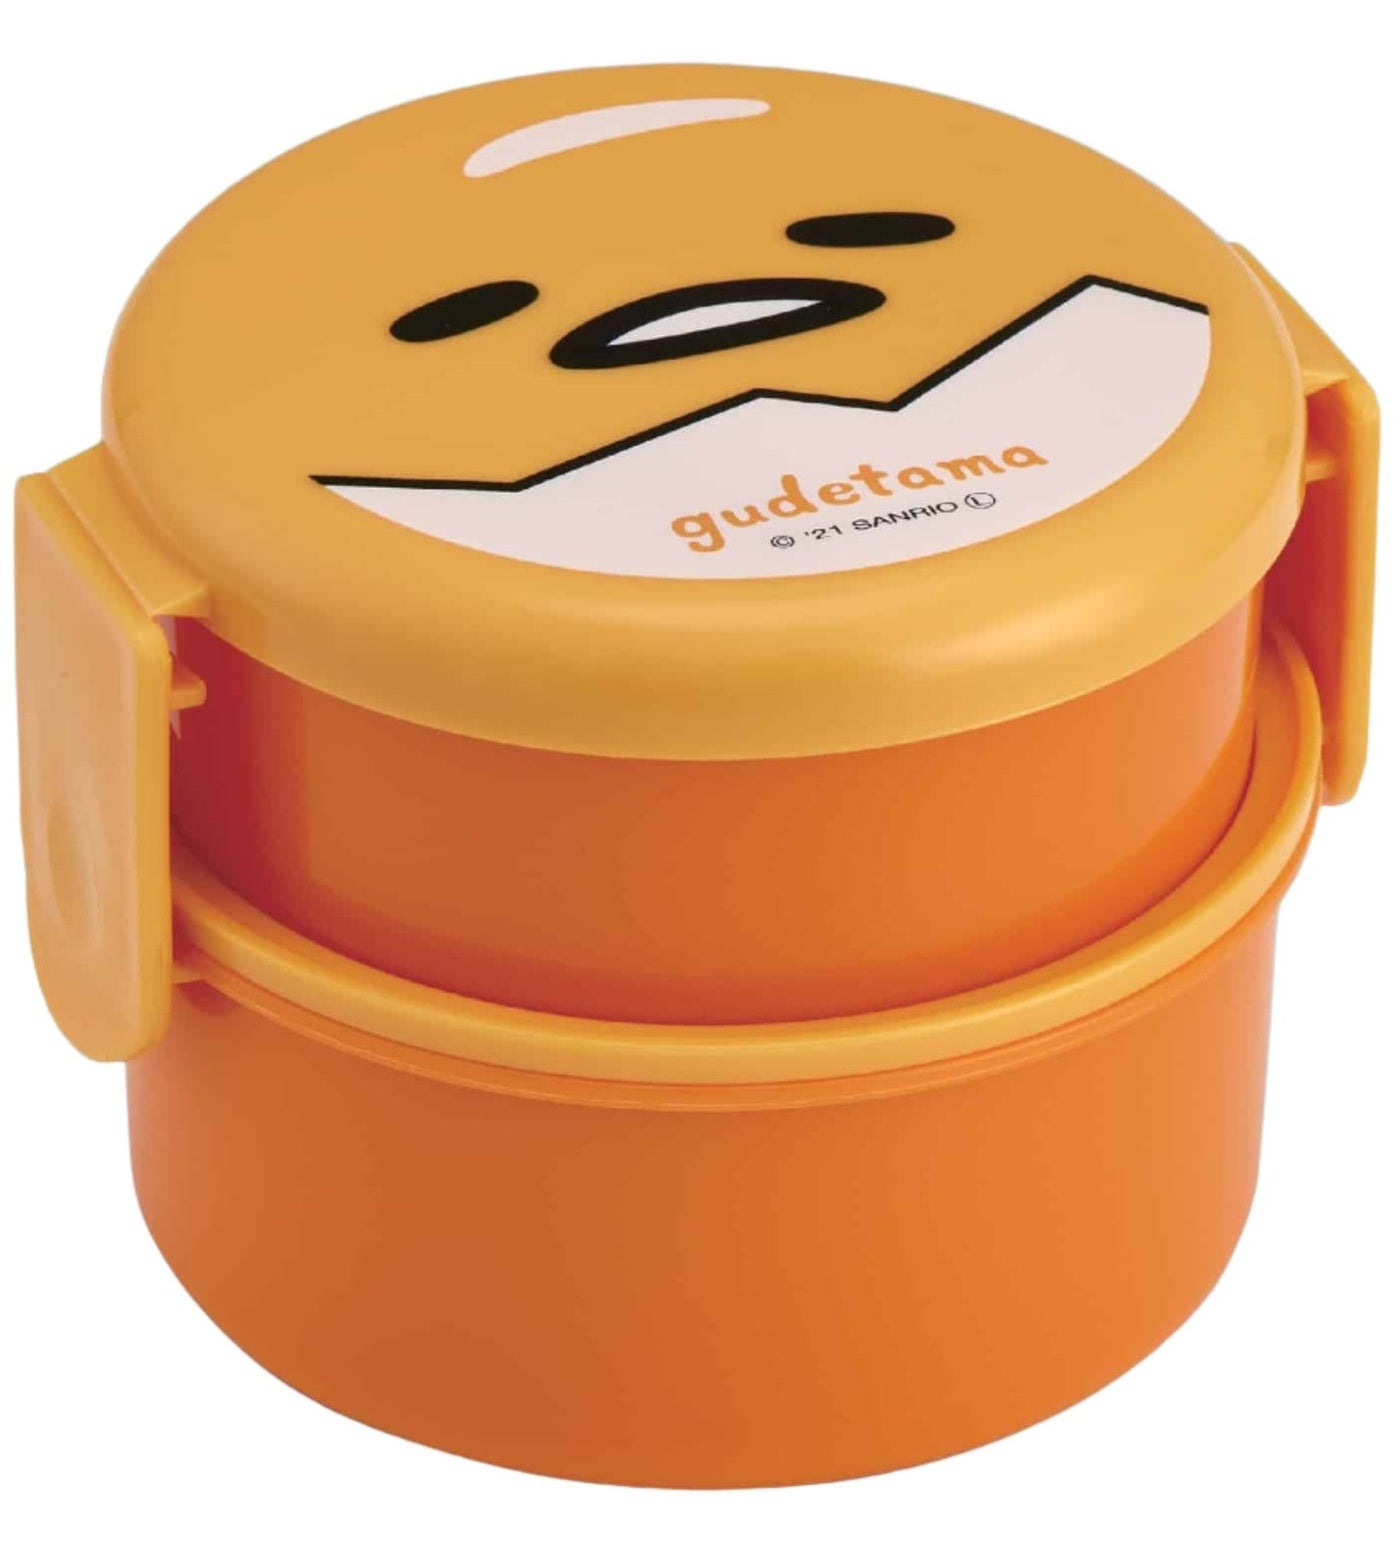 Gudetama Round Bento Lunch Box